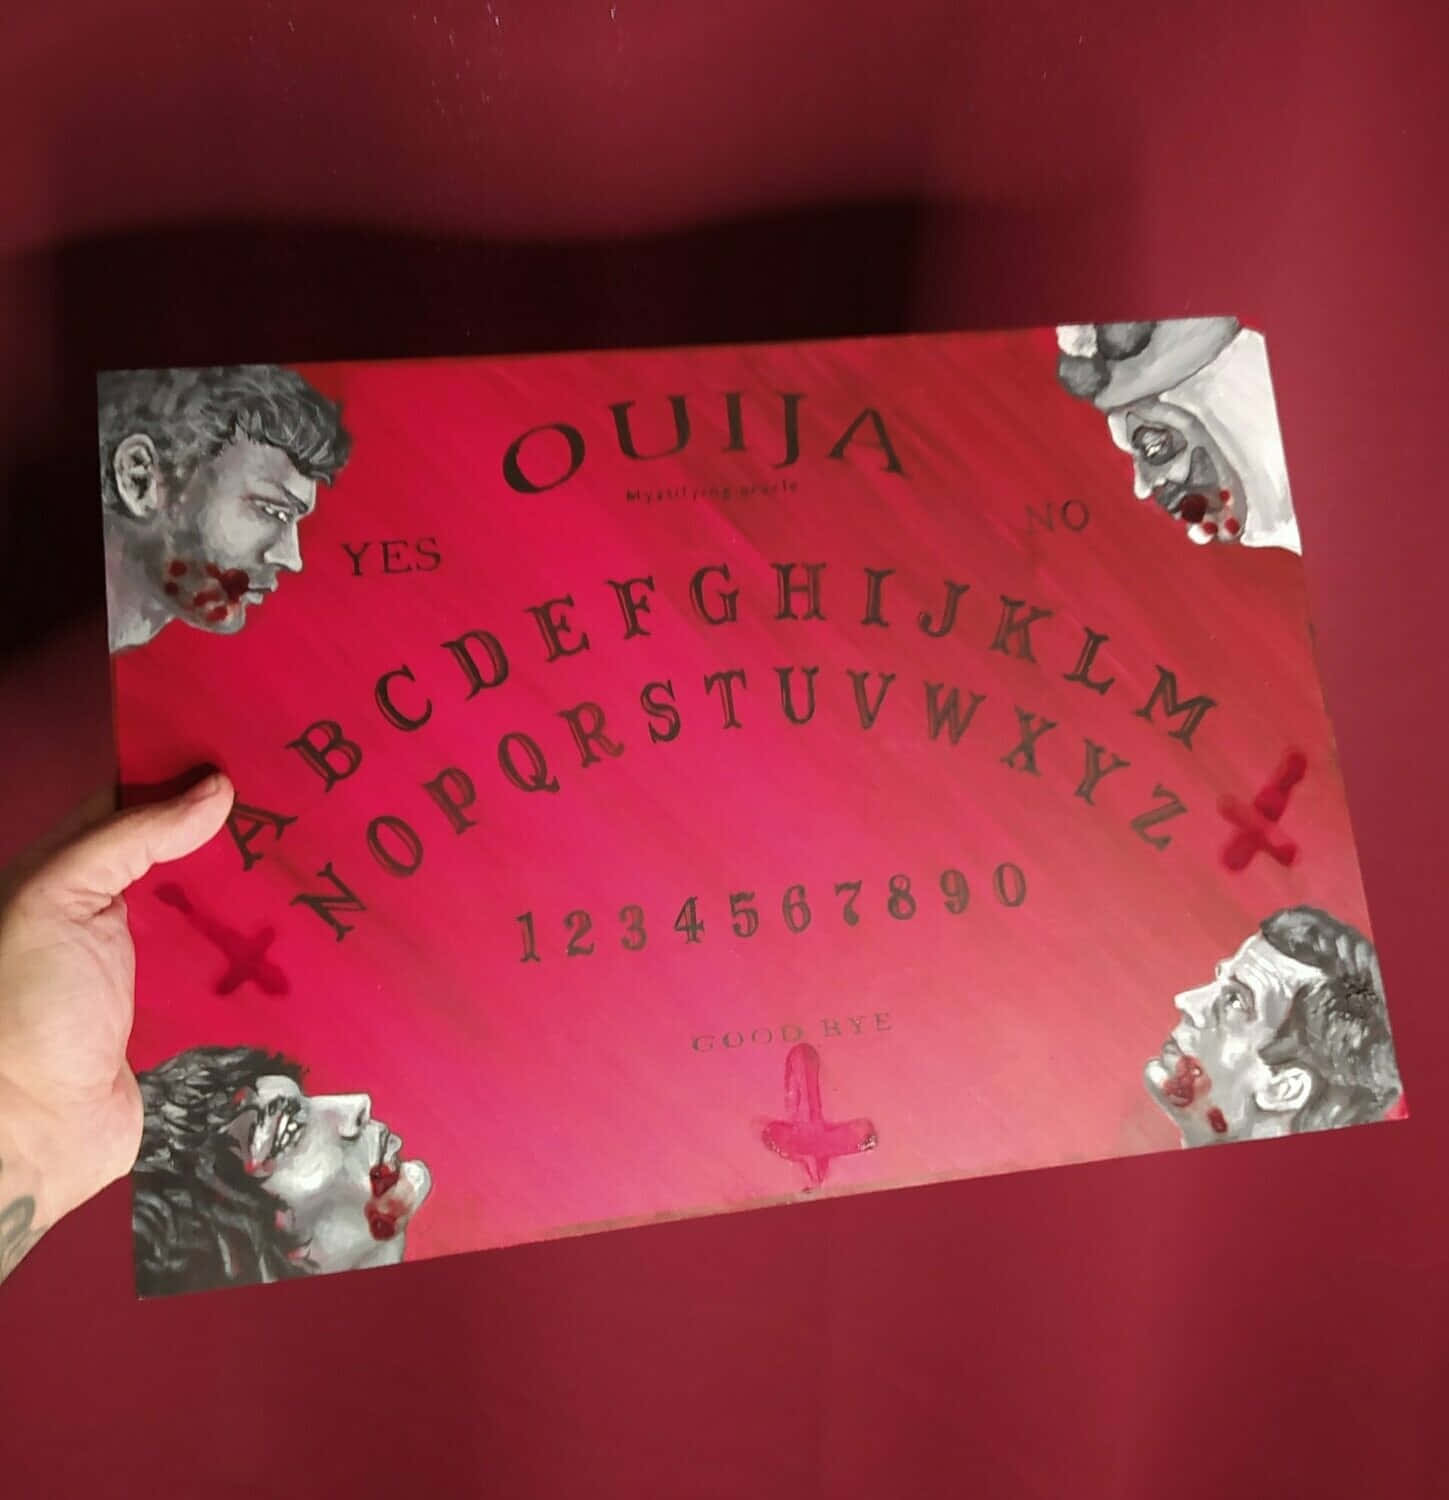 Scoprii Misteri Del Mondo Dello Spirito Con La Tavola Ouija